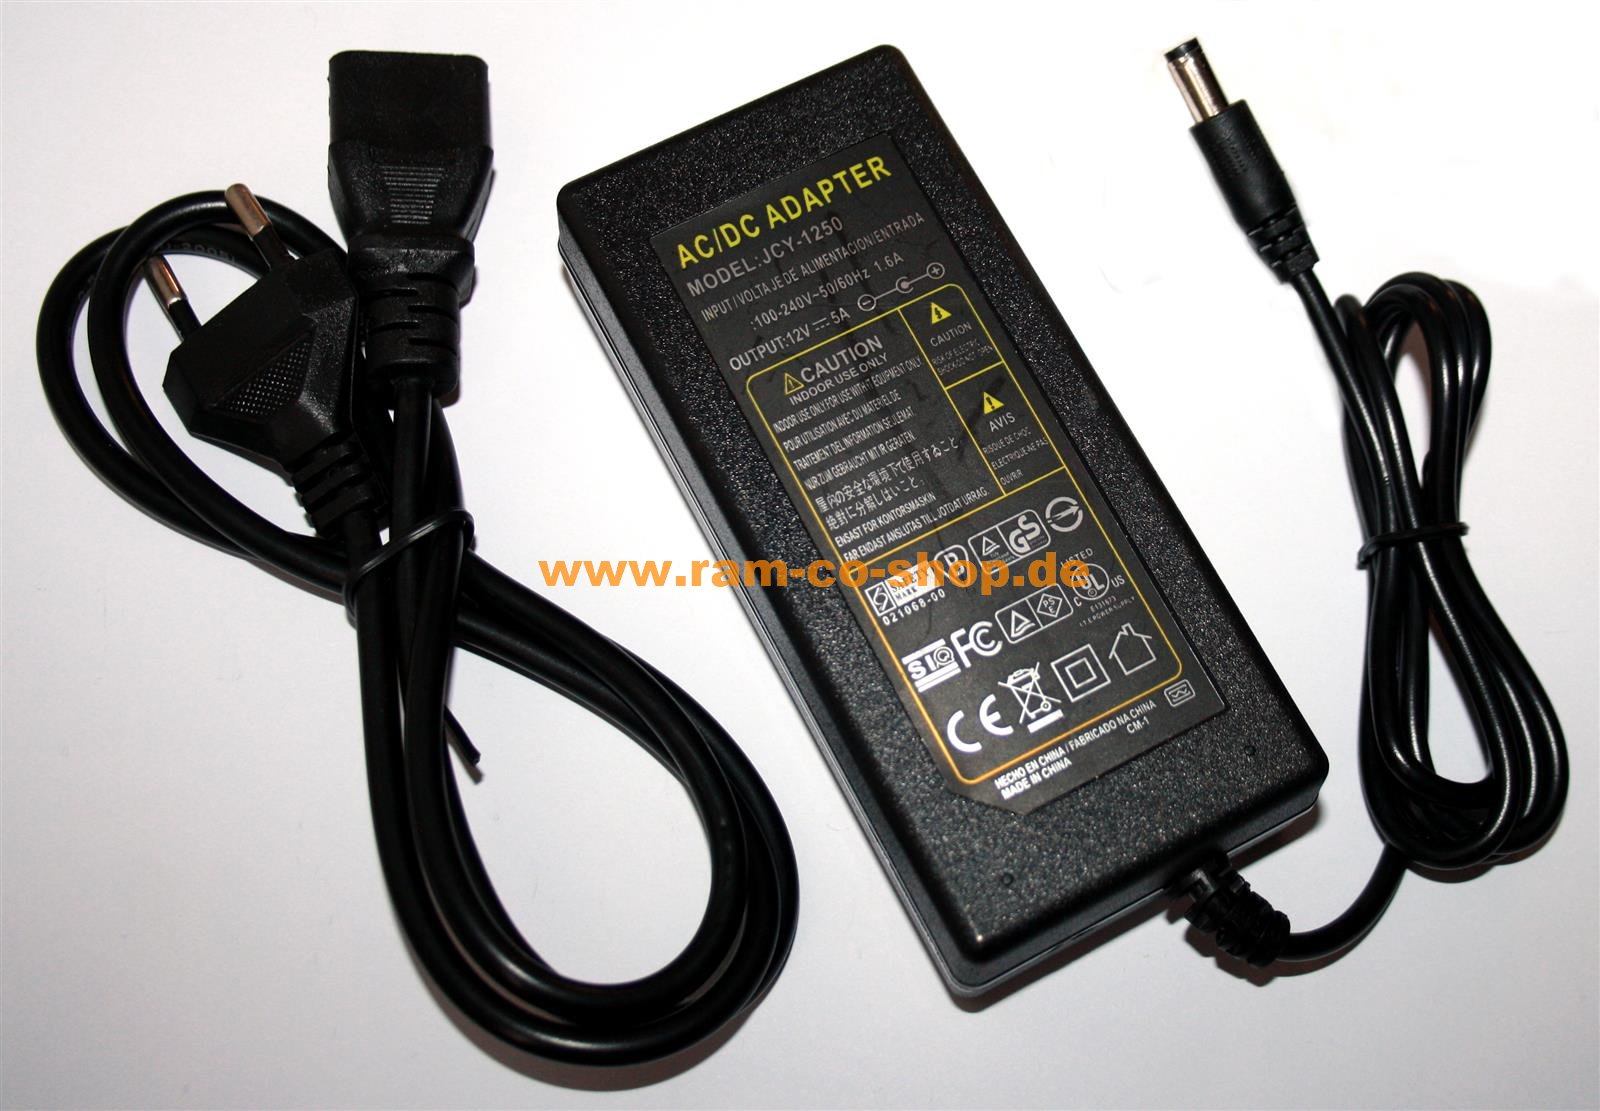 https://ram-co-shop.de/media/image/product/34610/lg/ac-power-adapter-ac-dc-12v-5a-60w-jcy-1250-netzteil-ladegeraet-hohlstecker-55-25mm.jpg